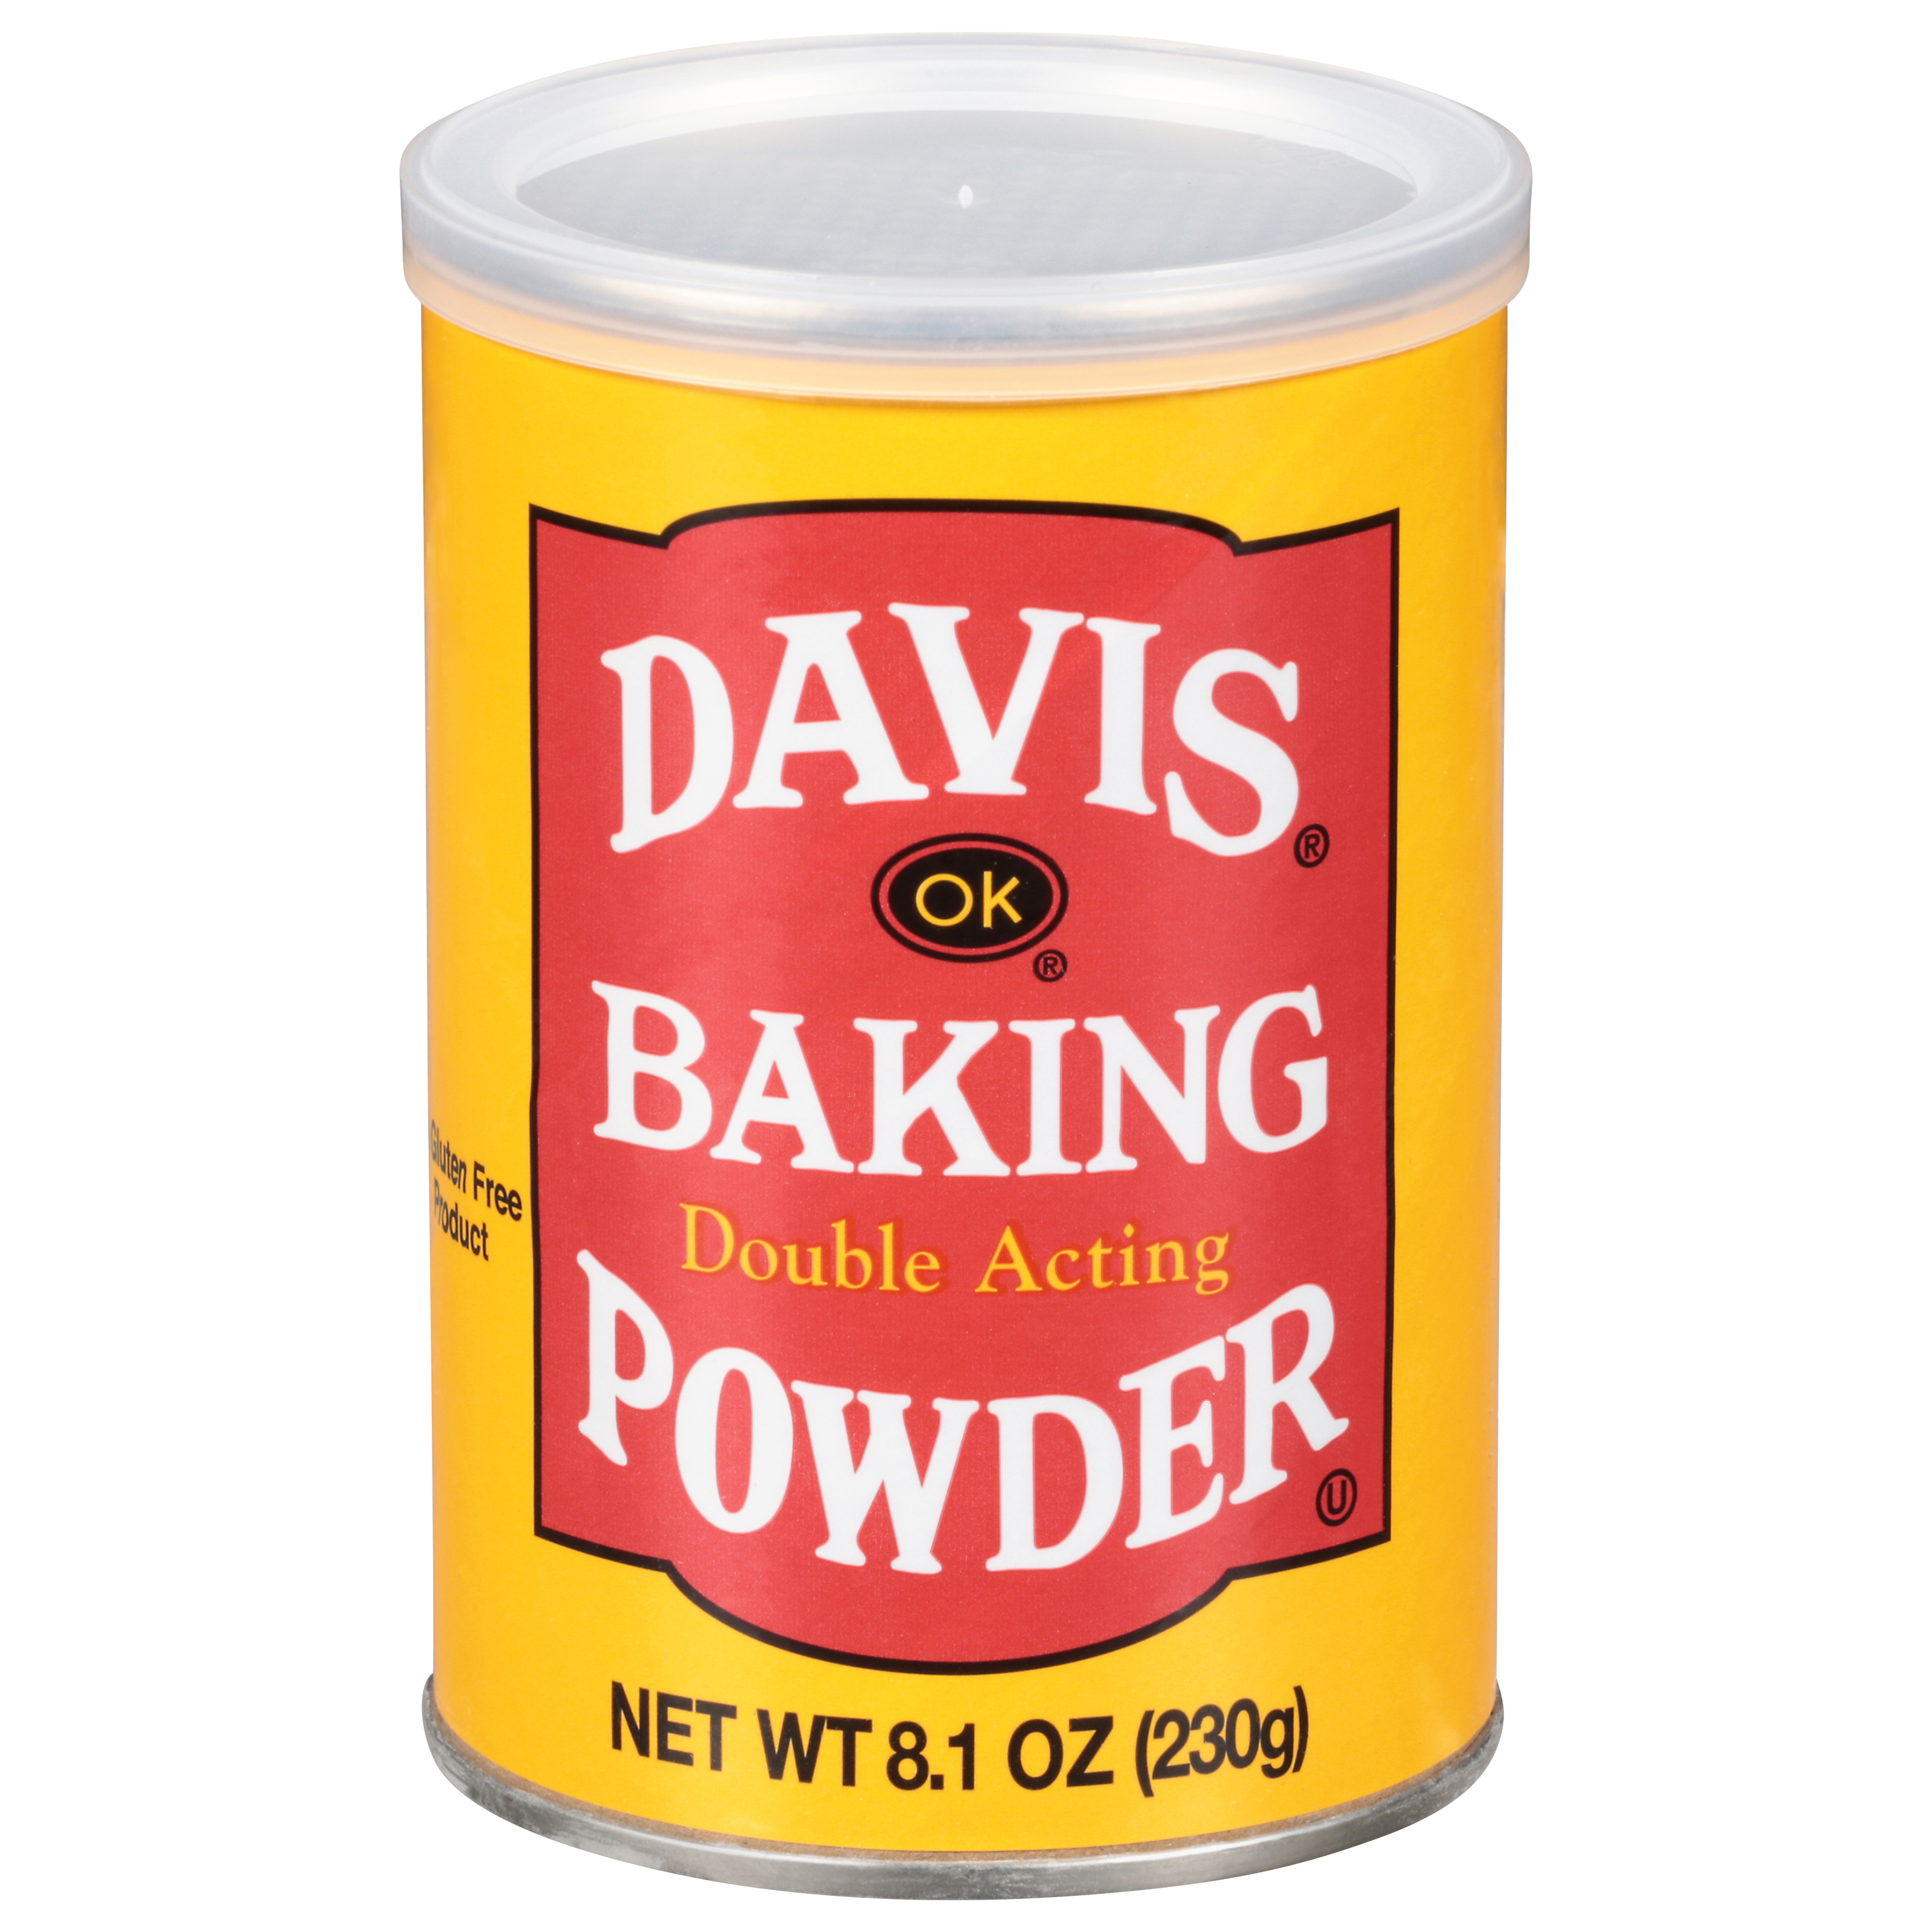 Davis Double Acting Baking Powder, 8.1 oz - image 1 of 8